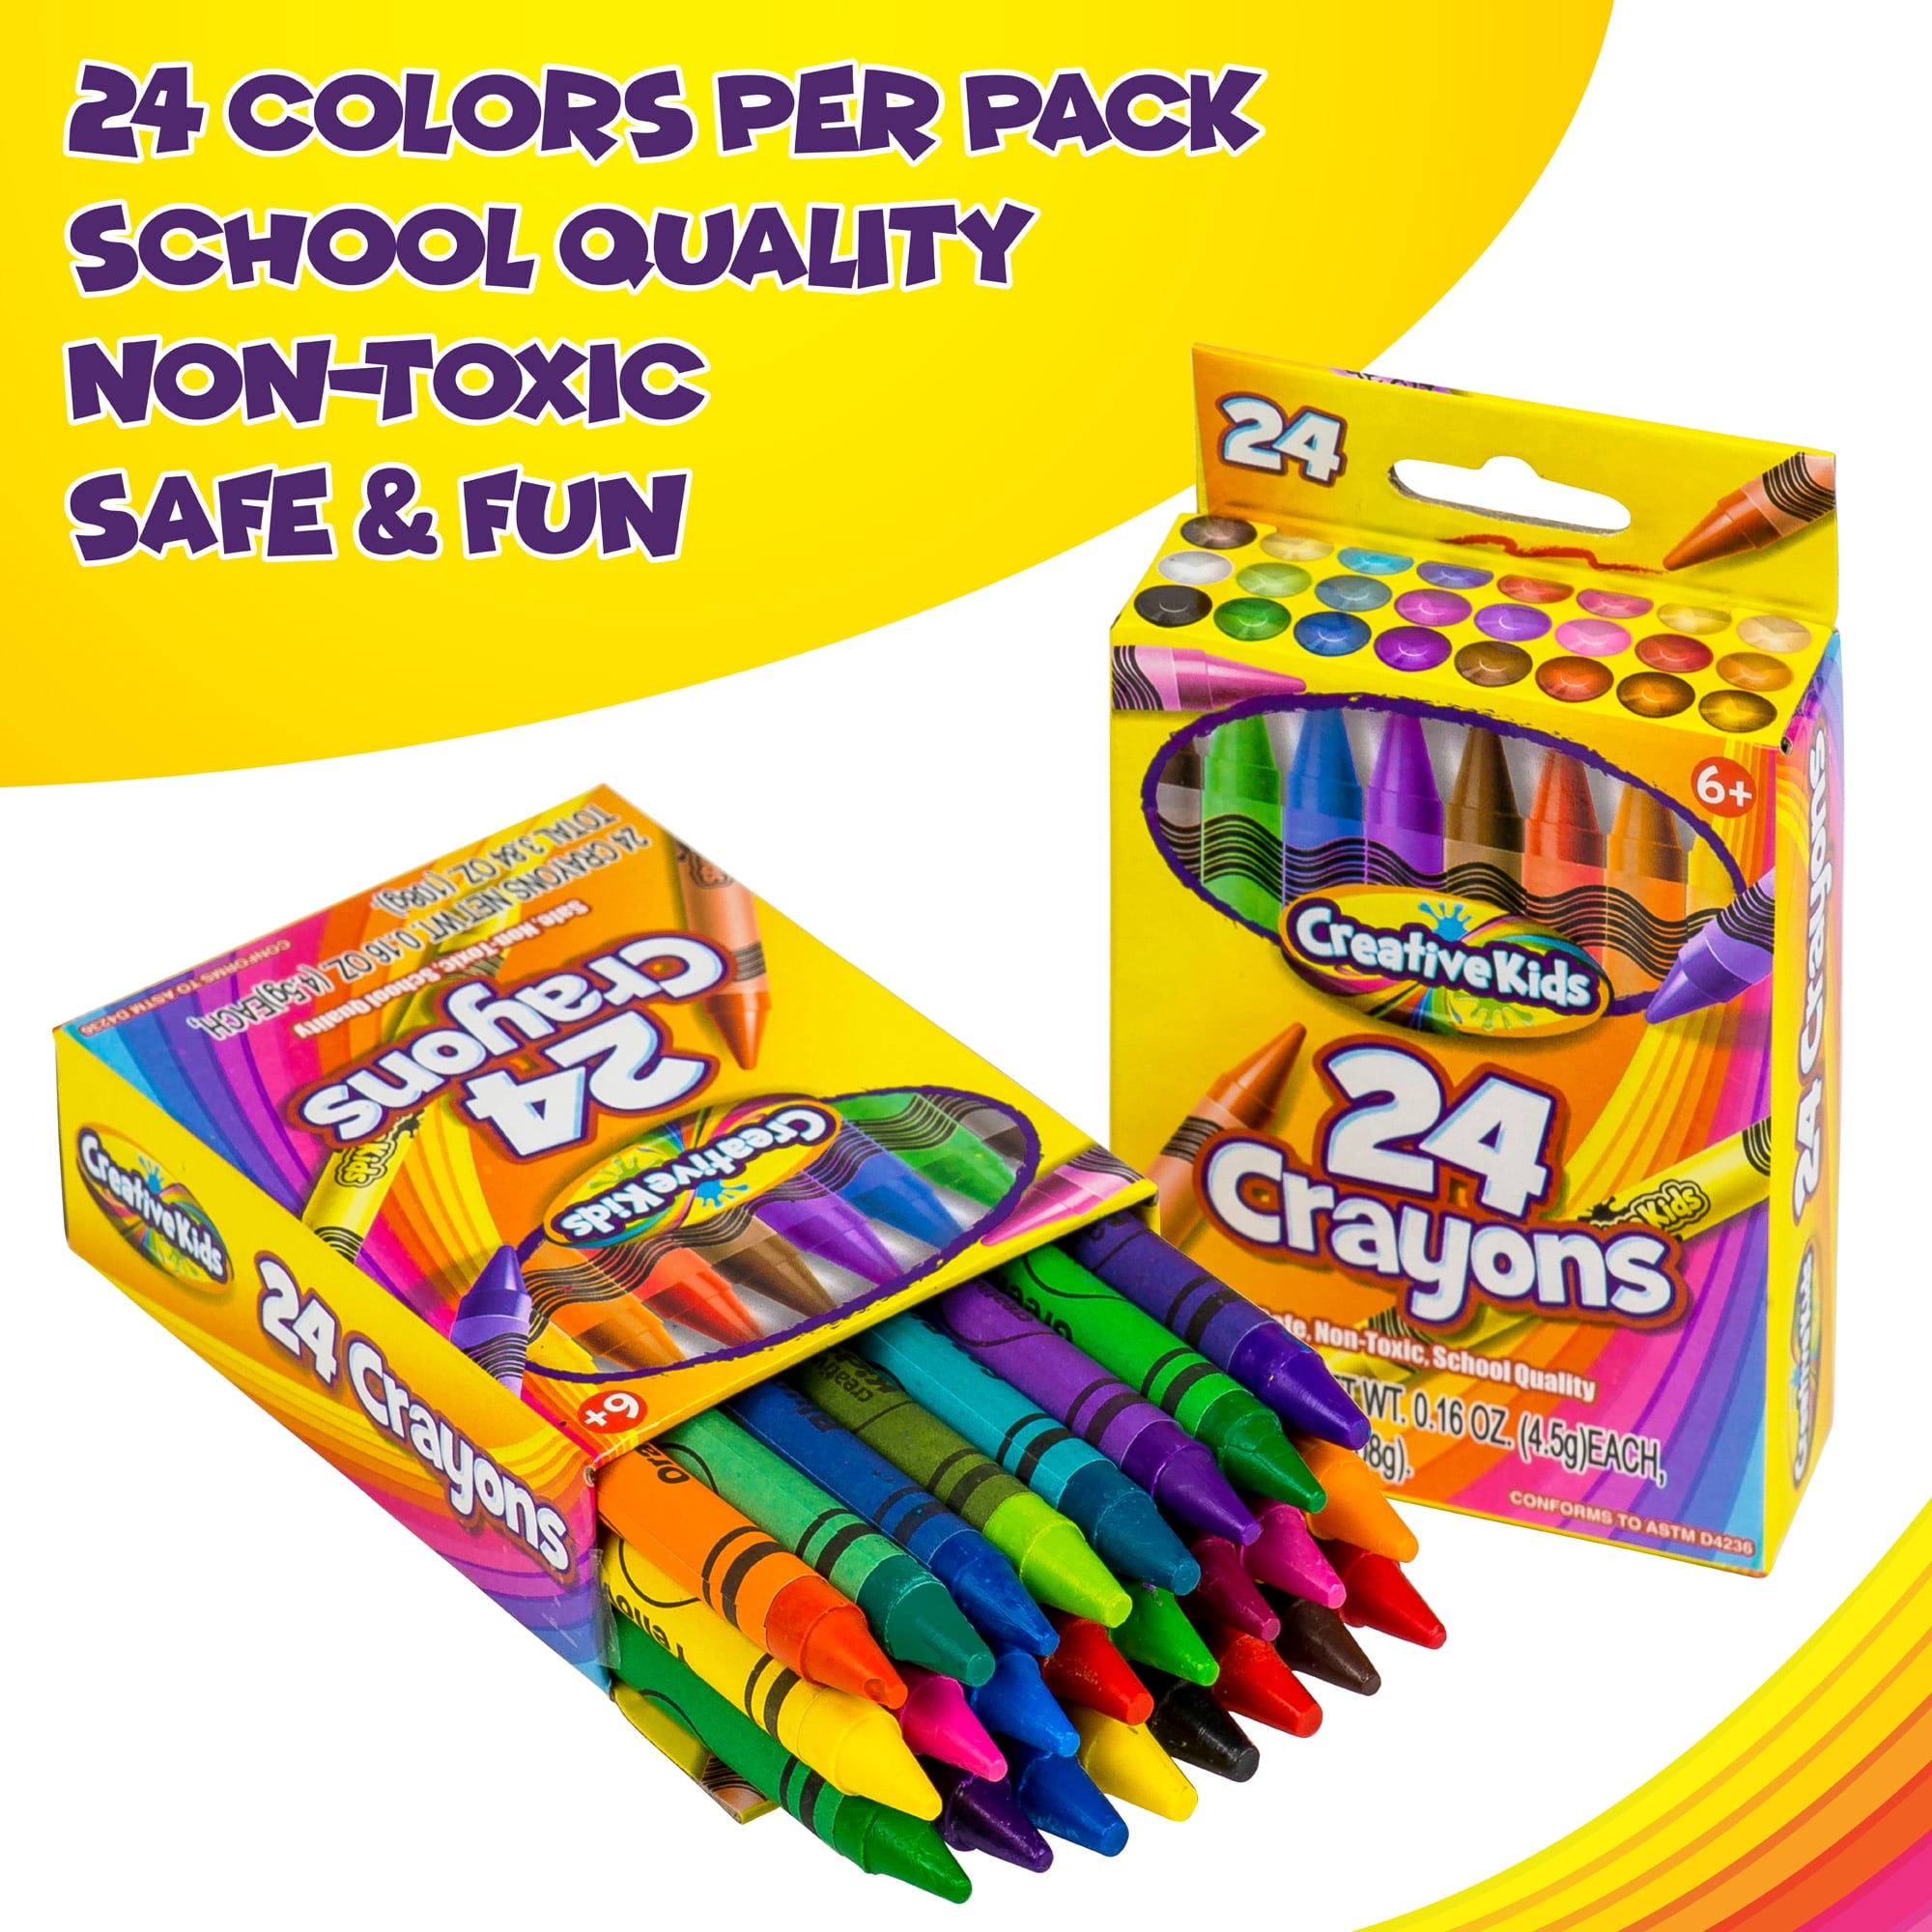 Crayon Rock – Creative Crayons Workshop